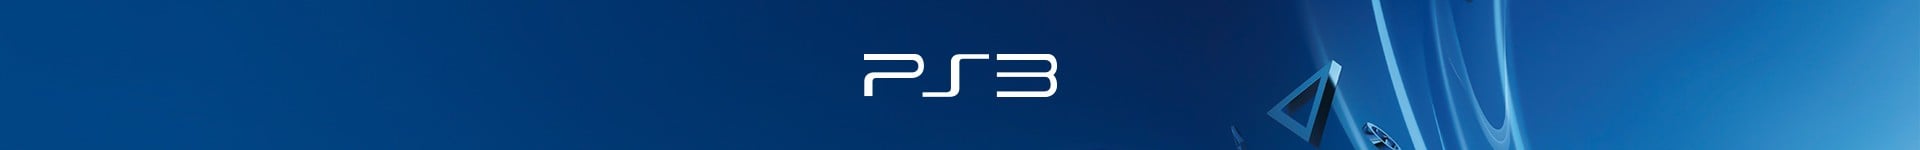 PlayStation 3 Zubehör